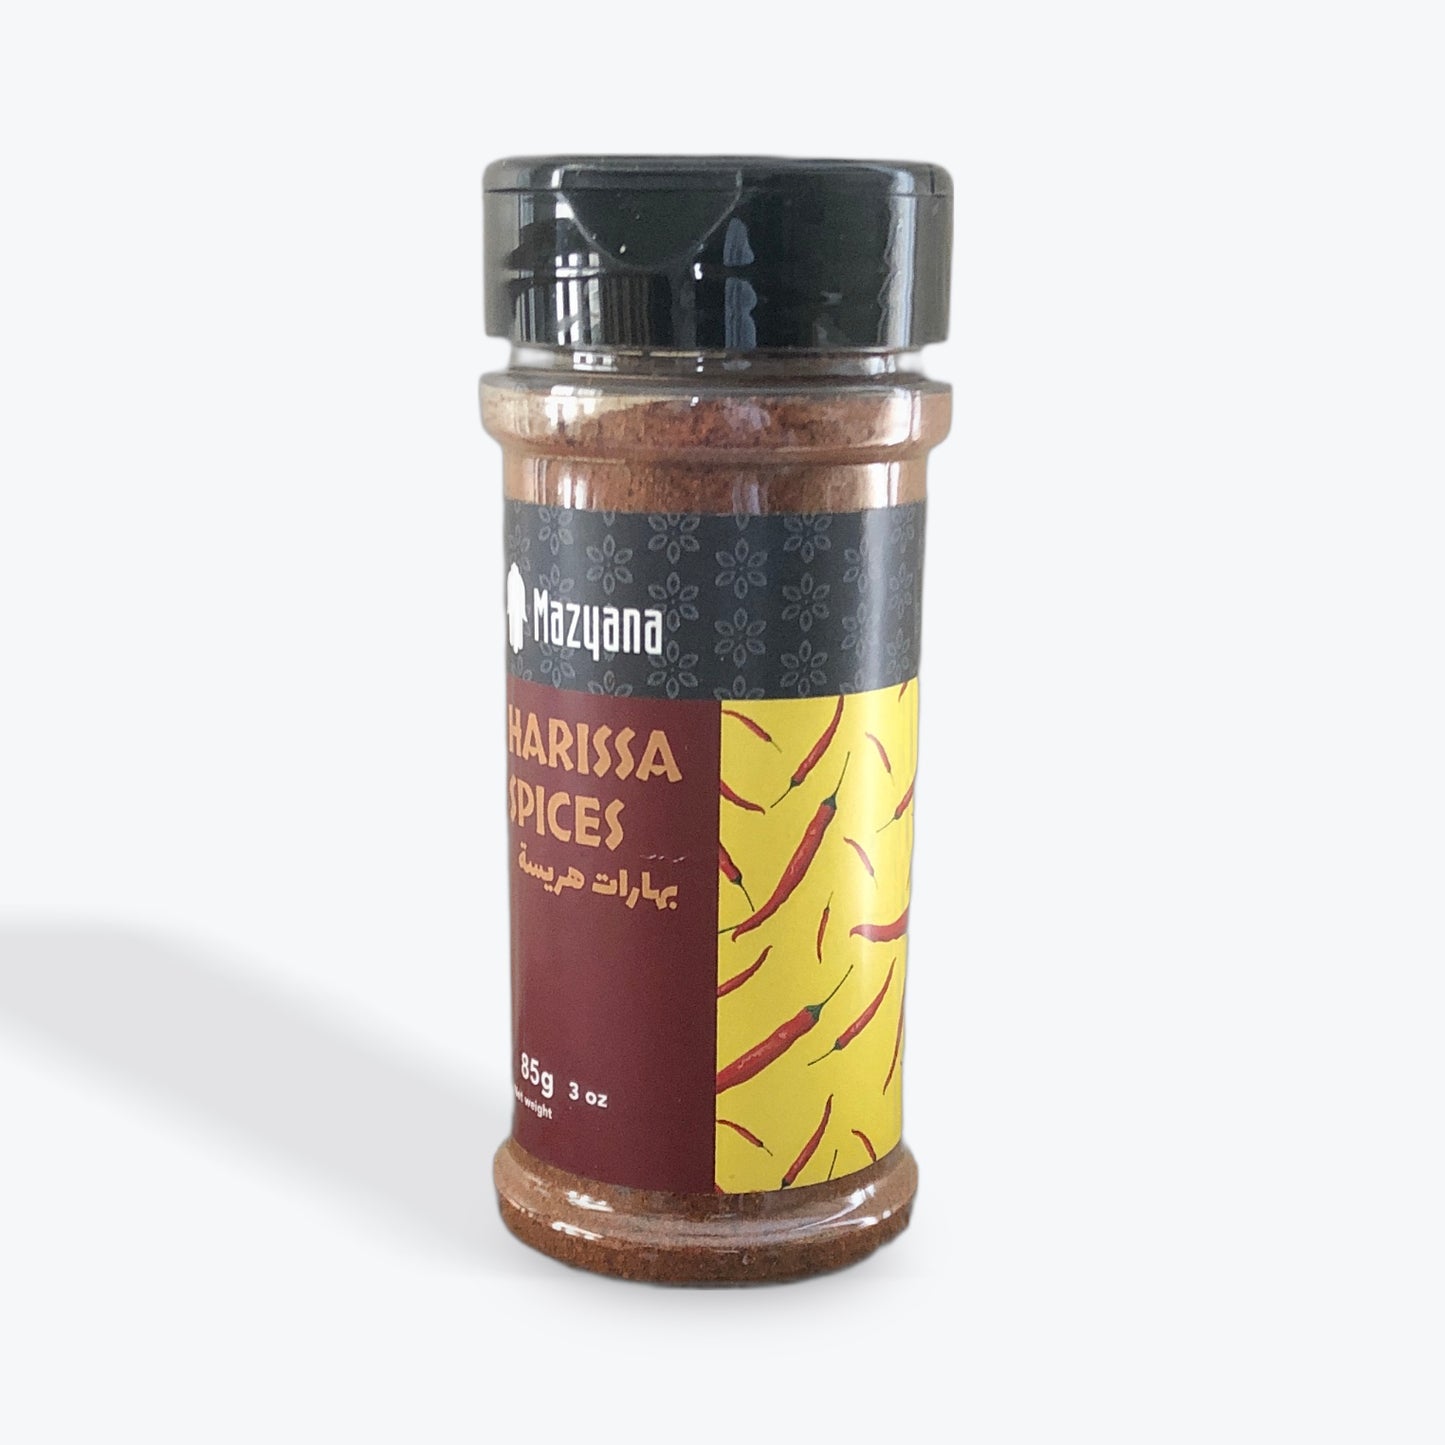 MAZYANA EPICES HARISSA 100gr (Harissa Spices)